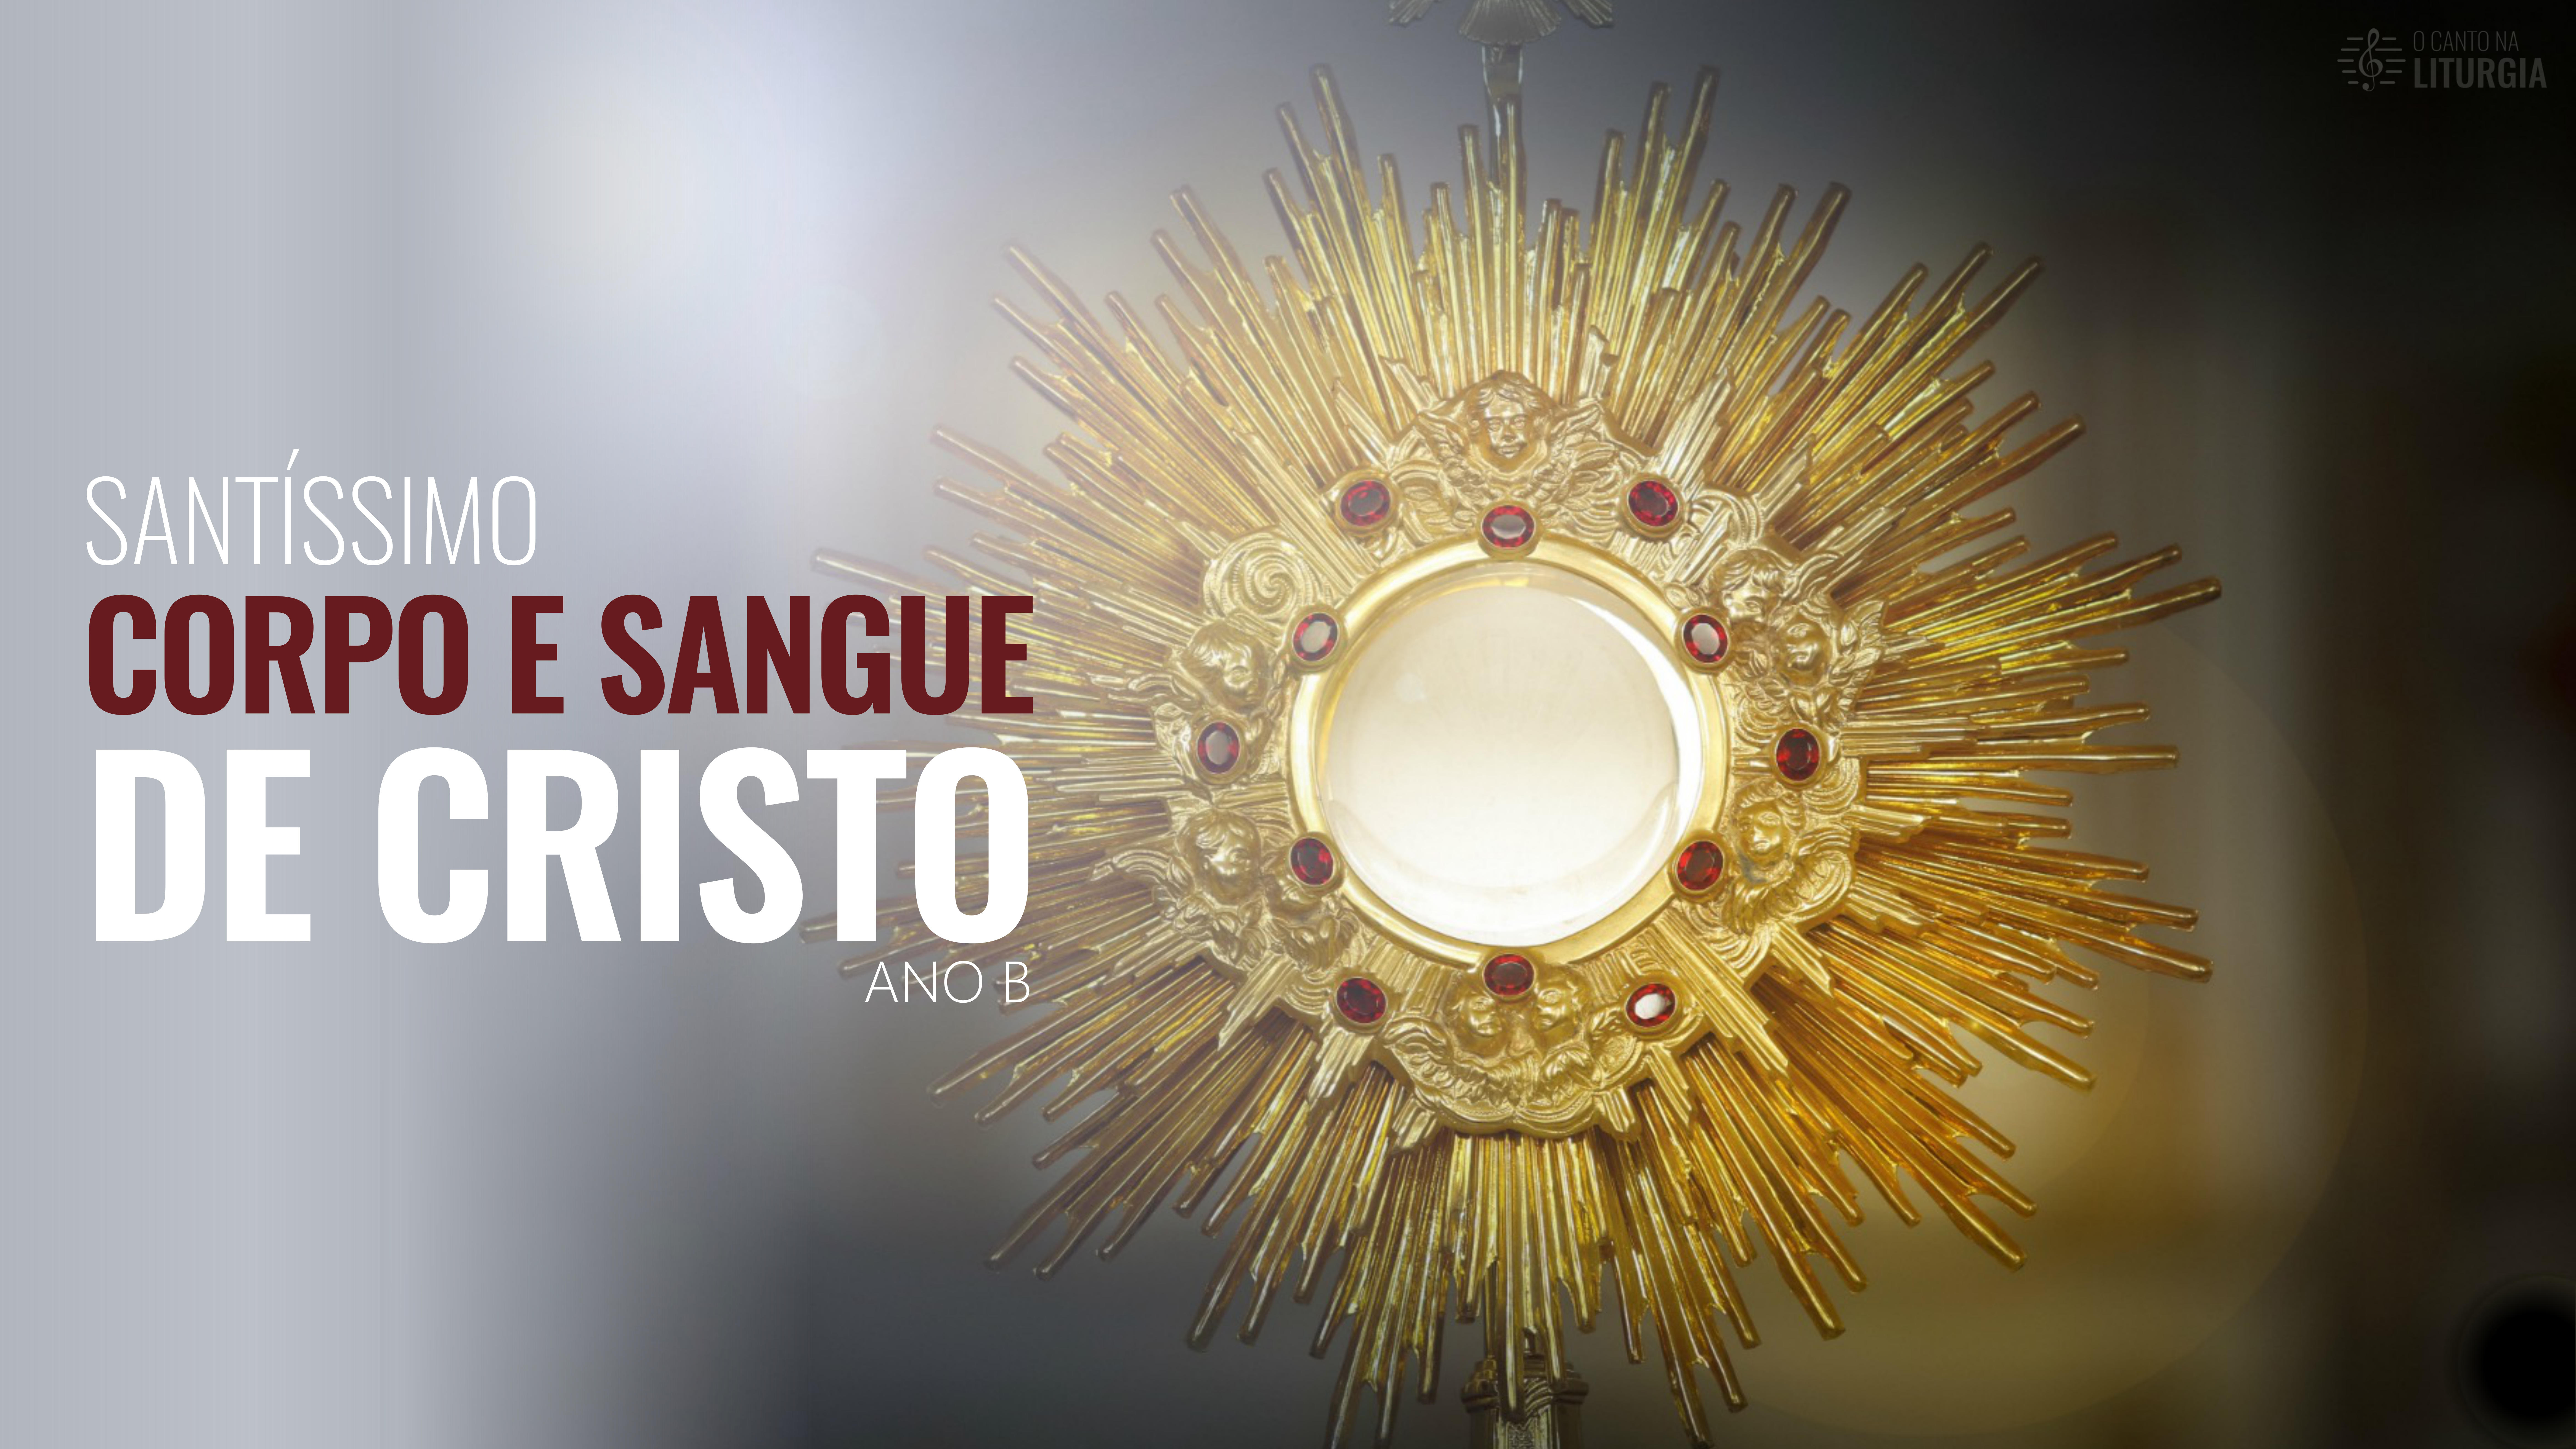 Cantos para Missa: Missa do dia 31/05/2018 - Solenidade do Santíssimo Corpo  e Sangue de Cristo - Ano B